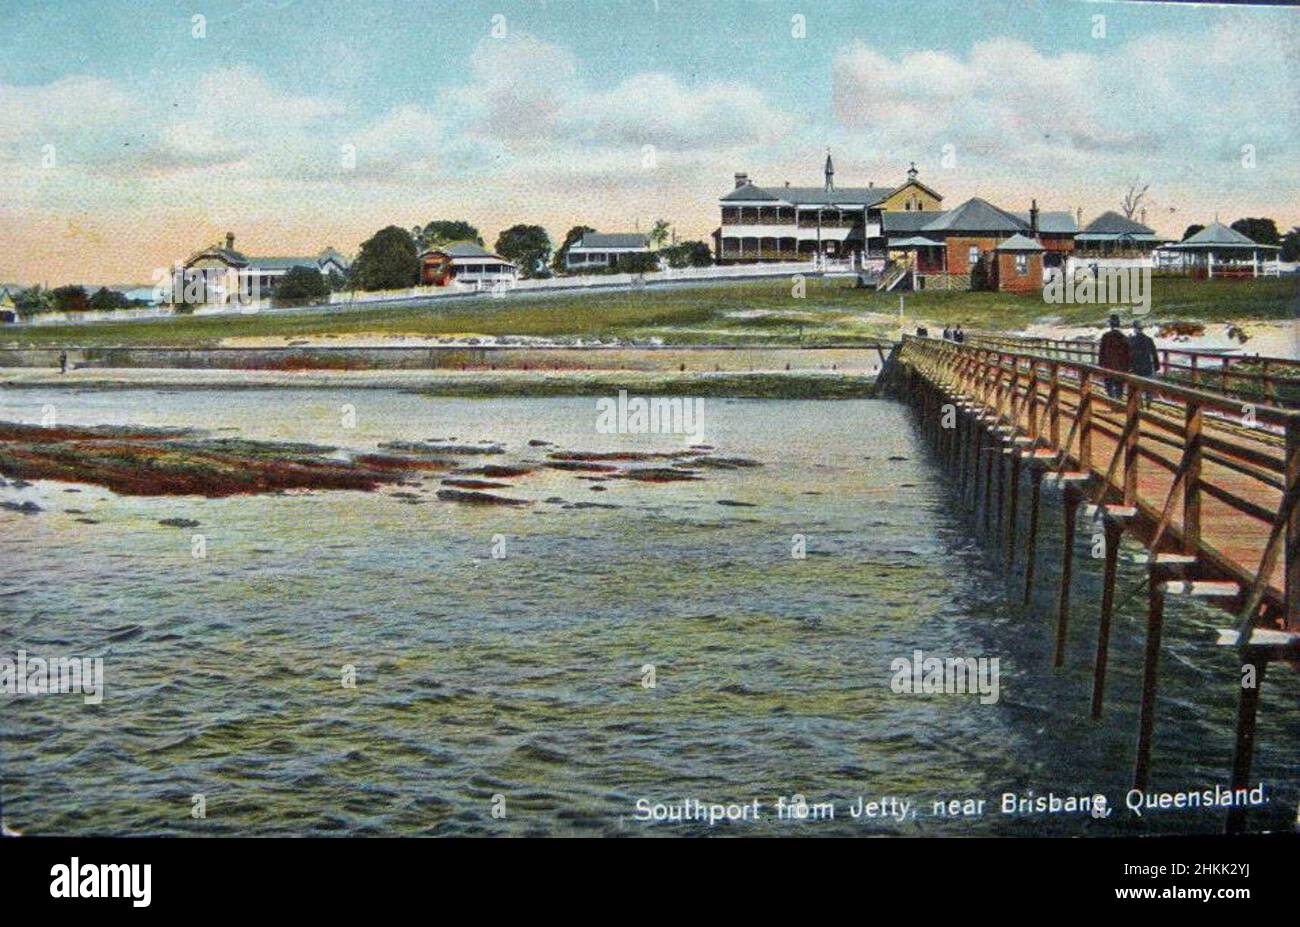 Southport de Jetty, près de Brisbane, Queensland, Australie - vers 1910 Banque D'Images